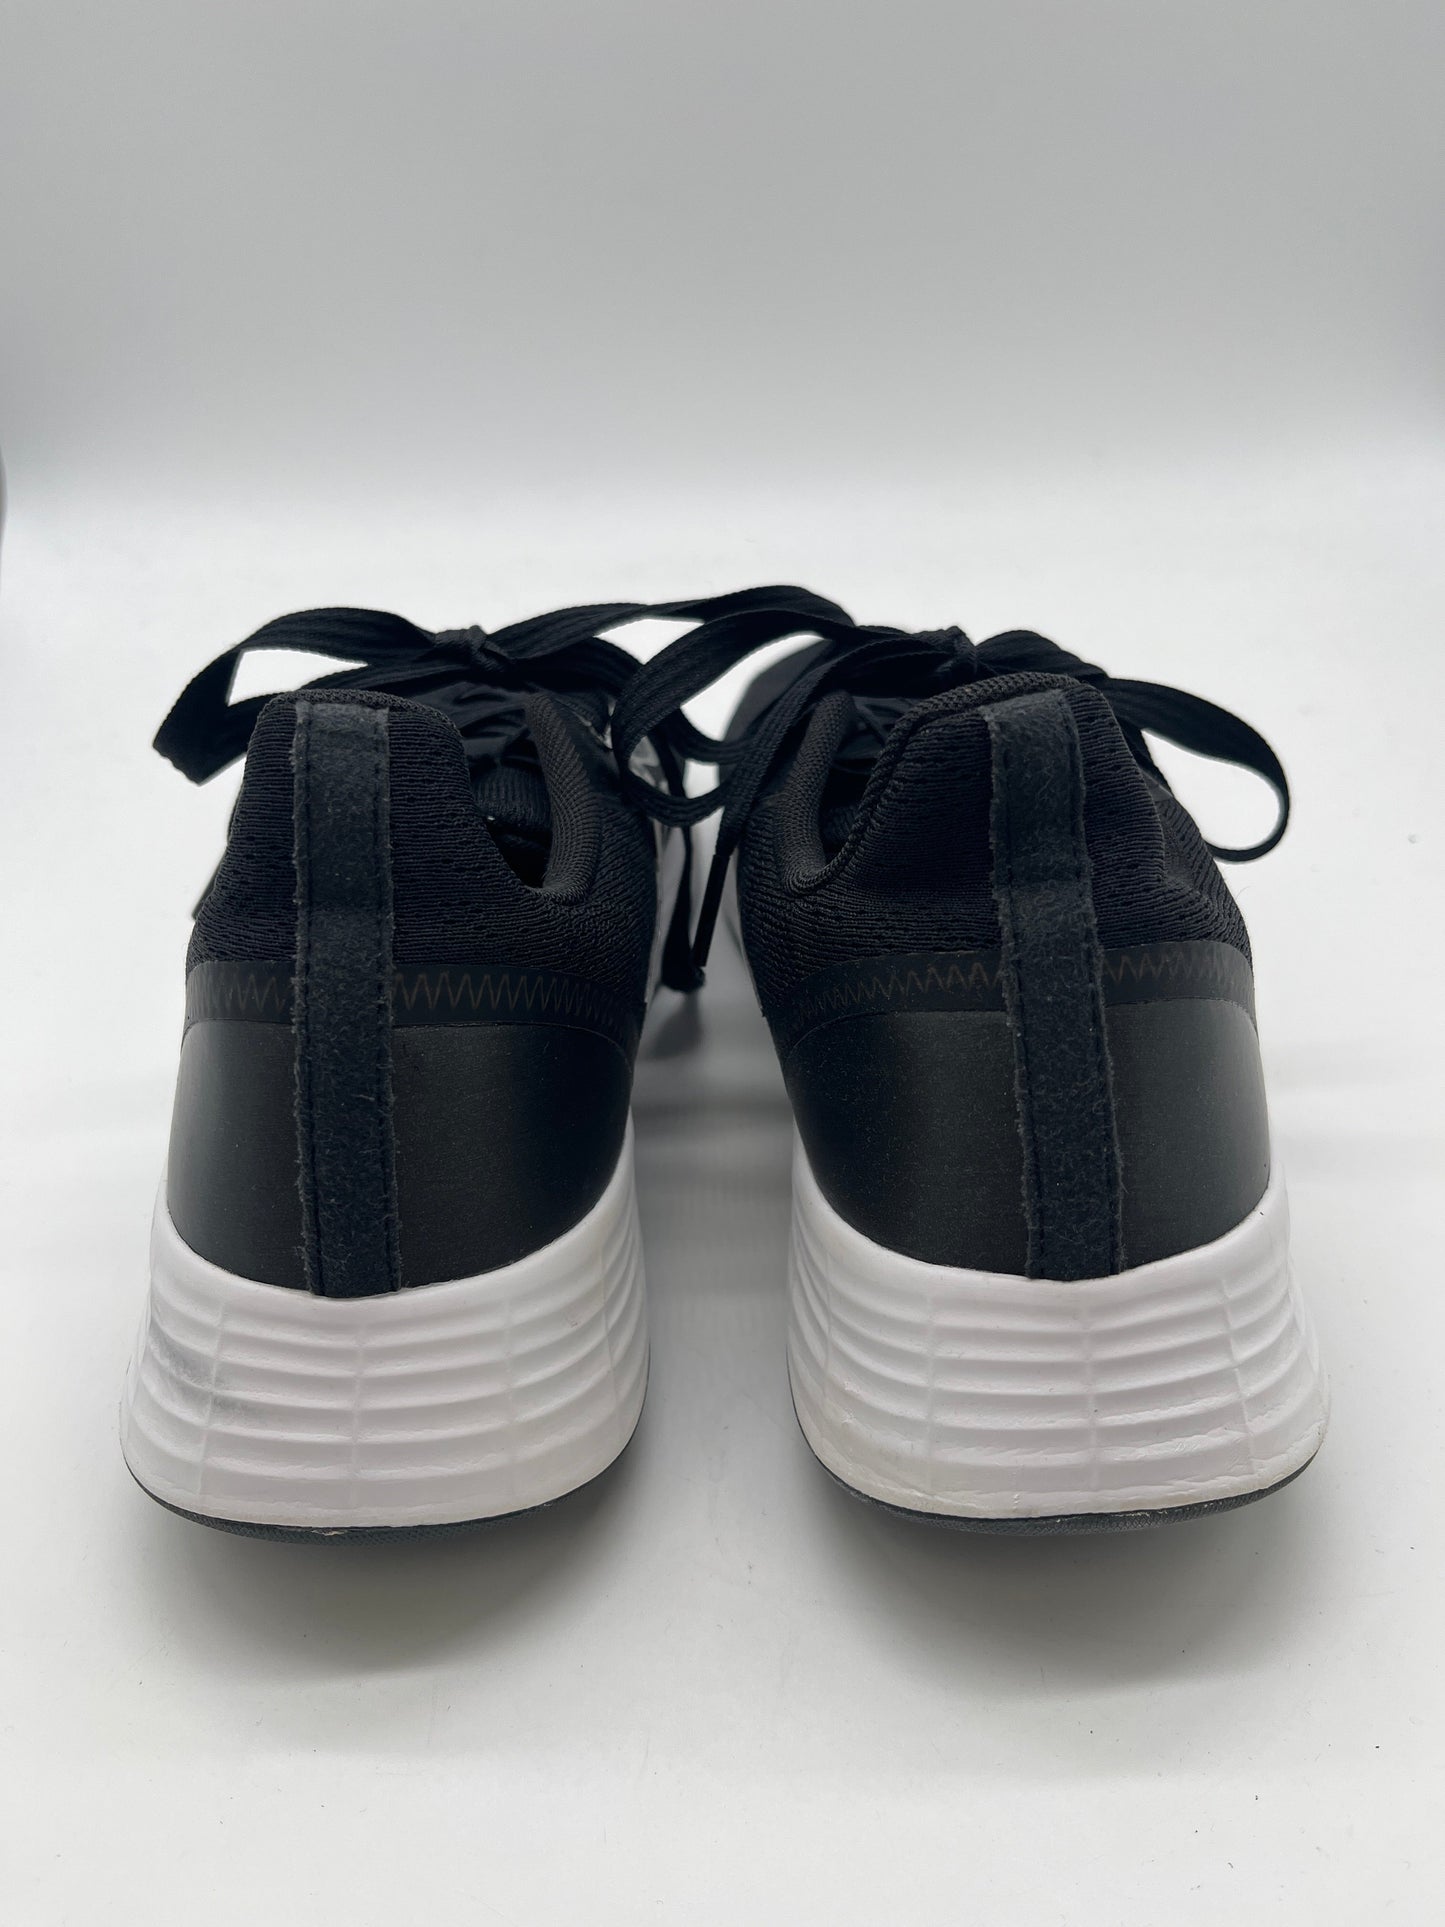 Black Shoes Athletic Adidas, Size 10